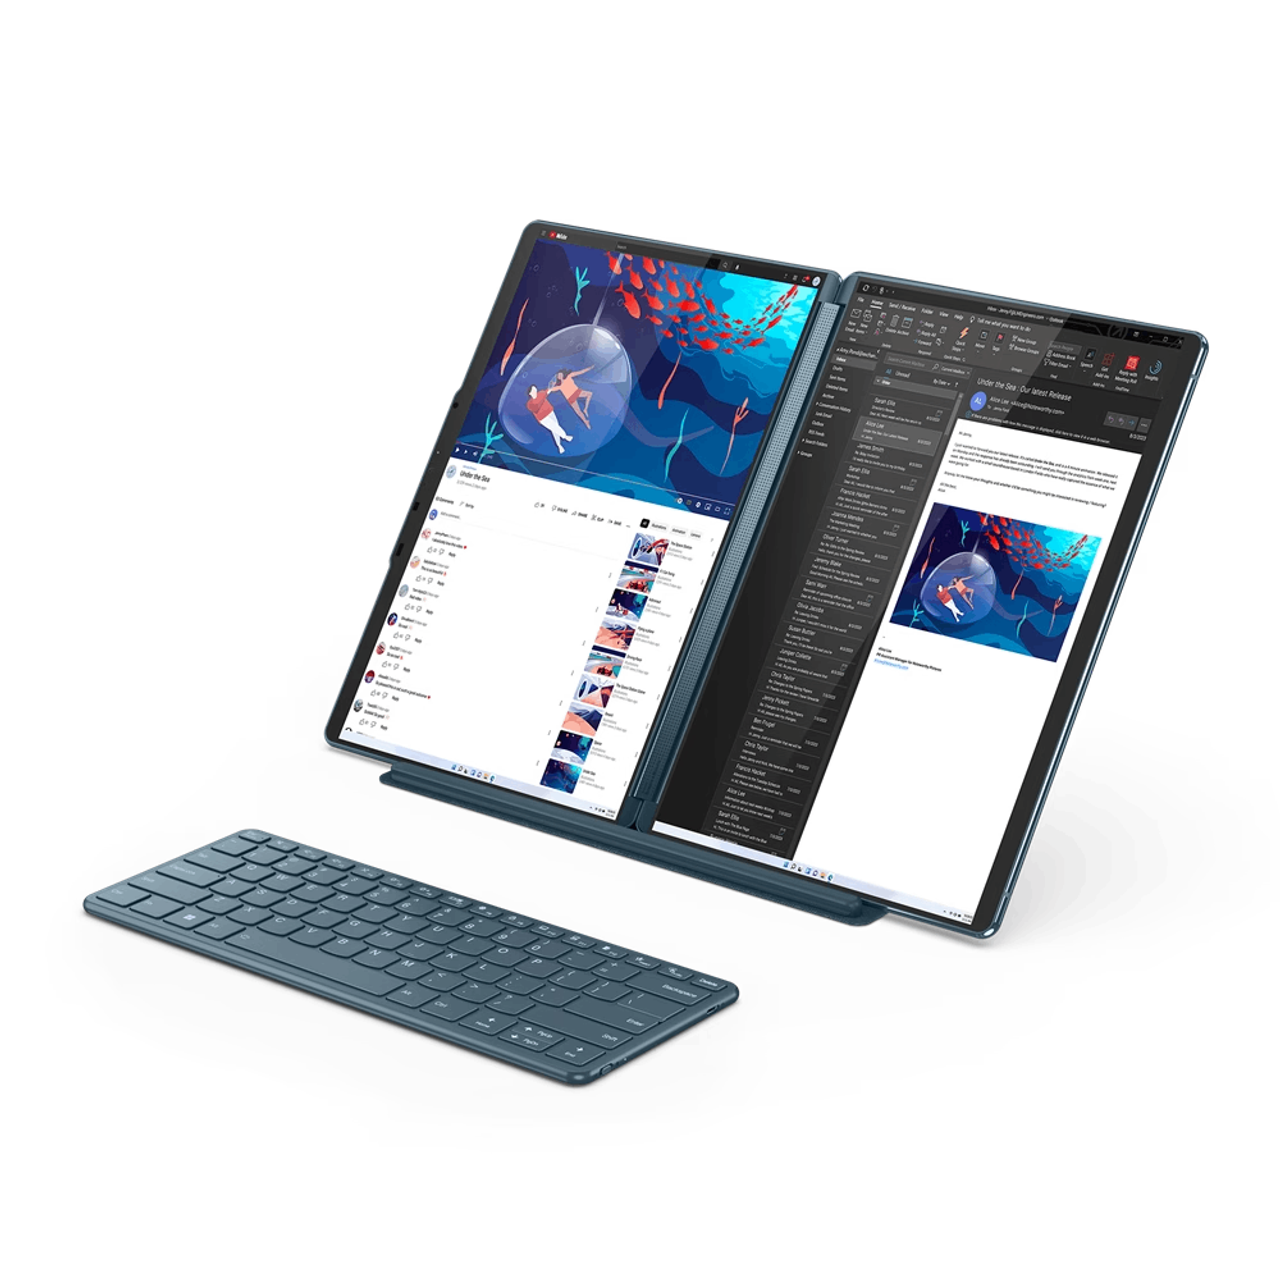  Lenovo Yoga Book - FHD 10.1 Windows Tablet - 2 in 1